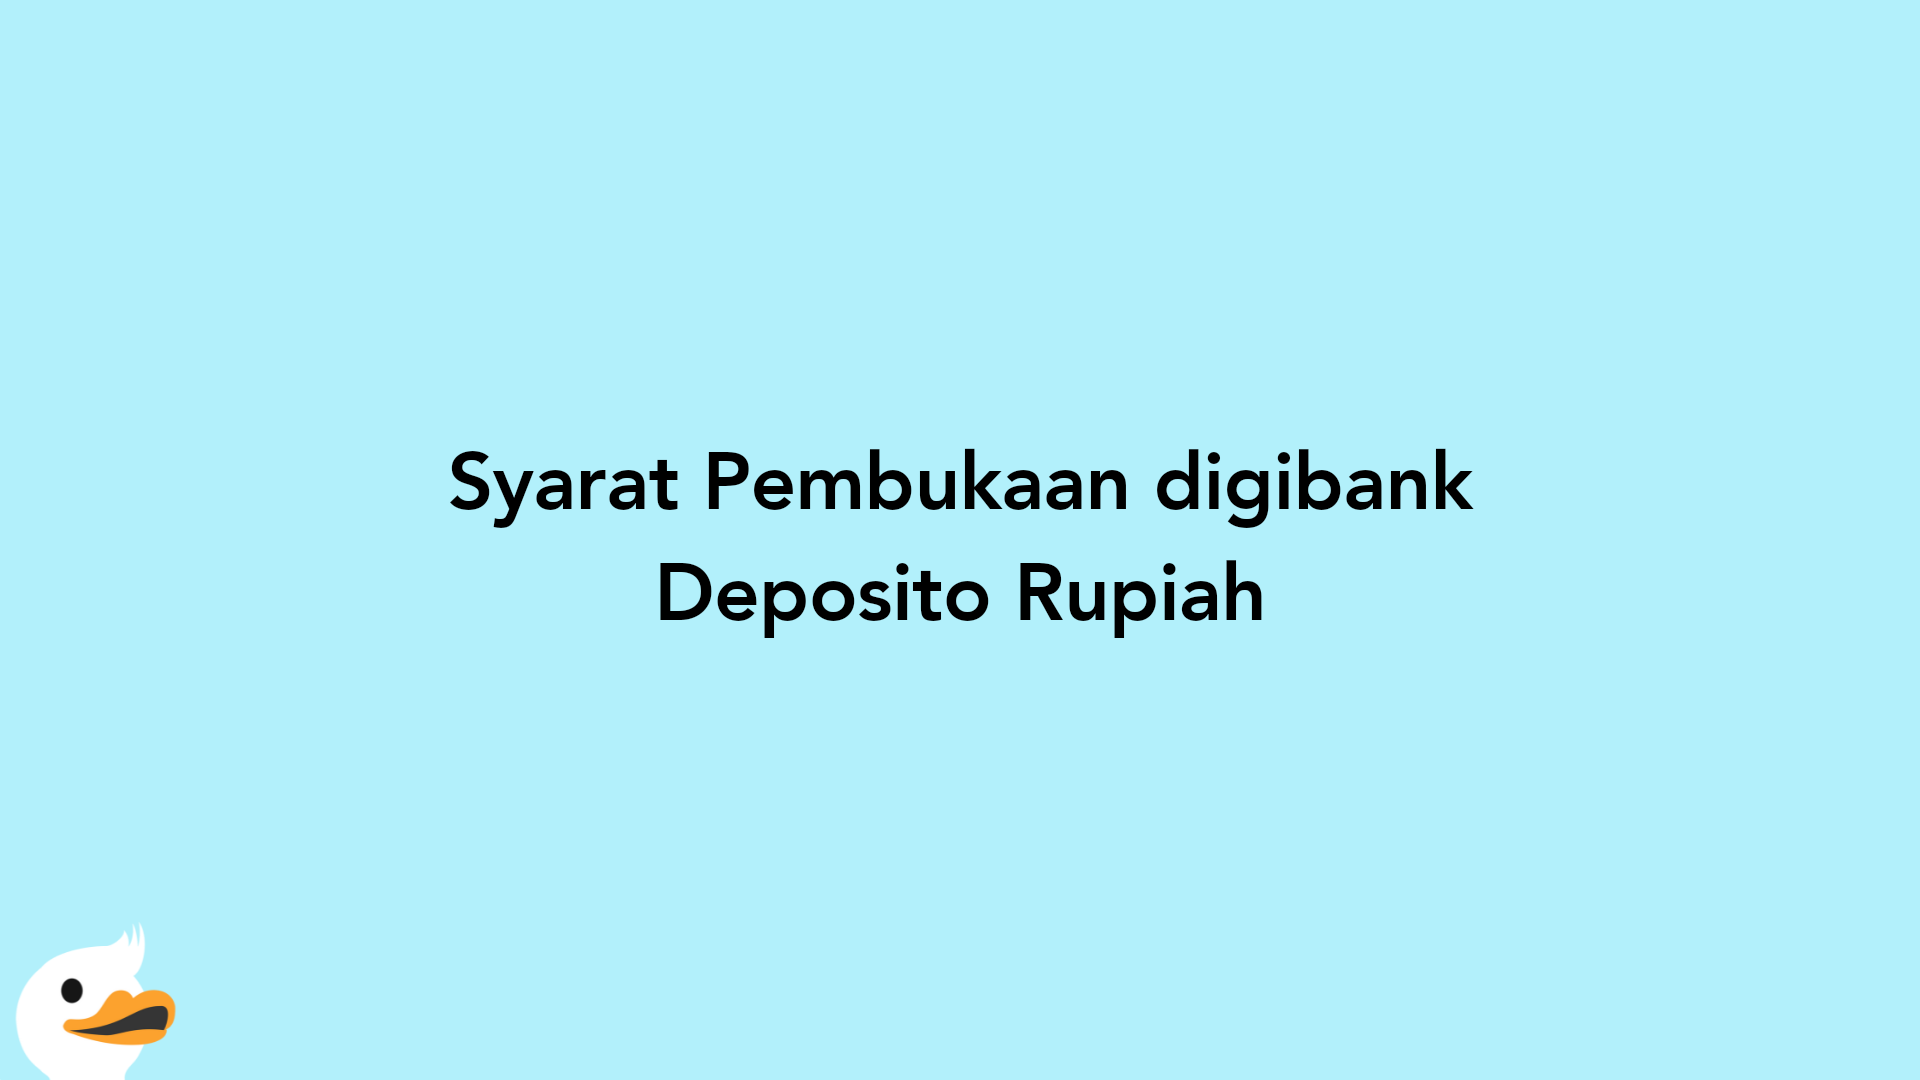 Syarat Pembukaan digibank Deposito Rupiah